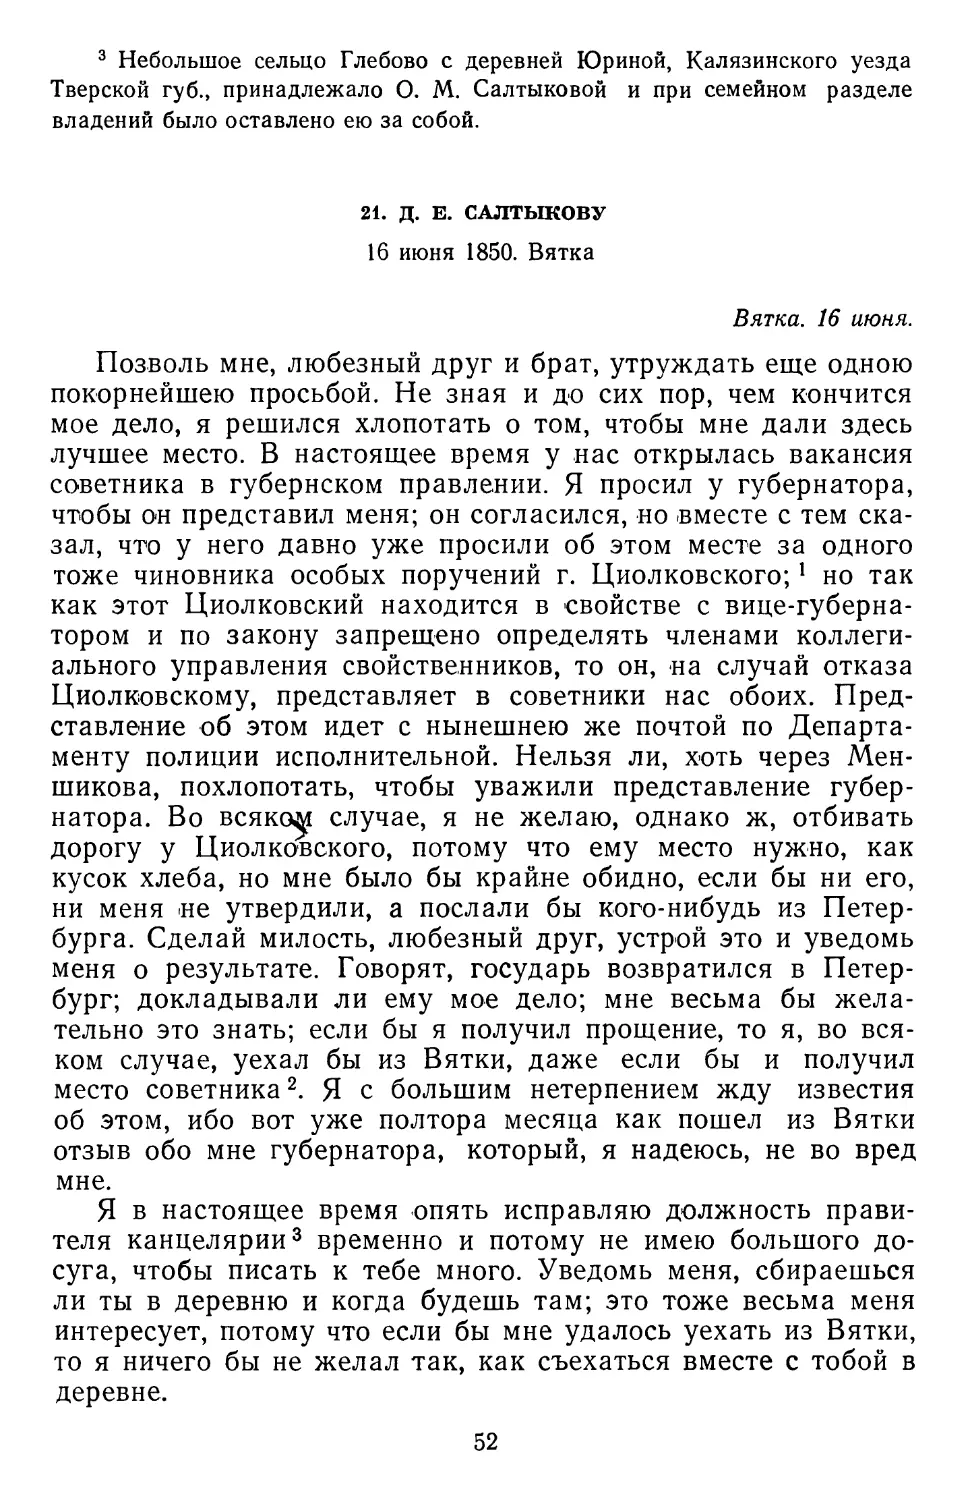 21.Д. Е. Салтыкову. 16 июня 1850. Вятка